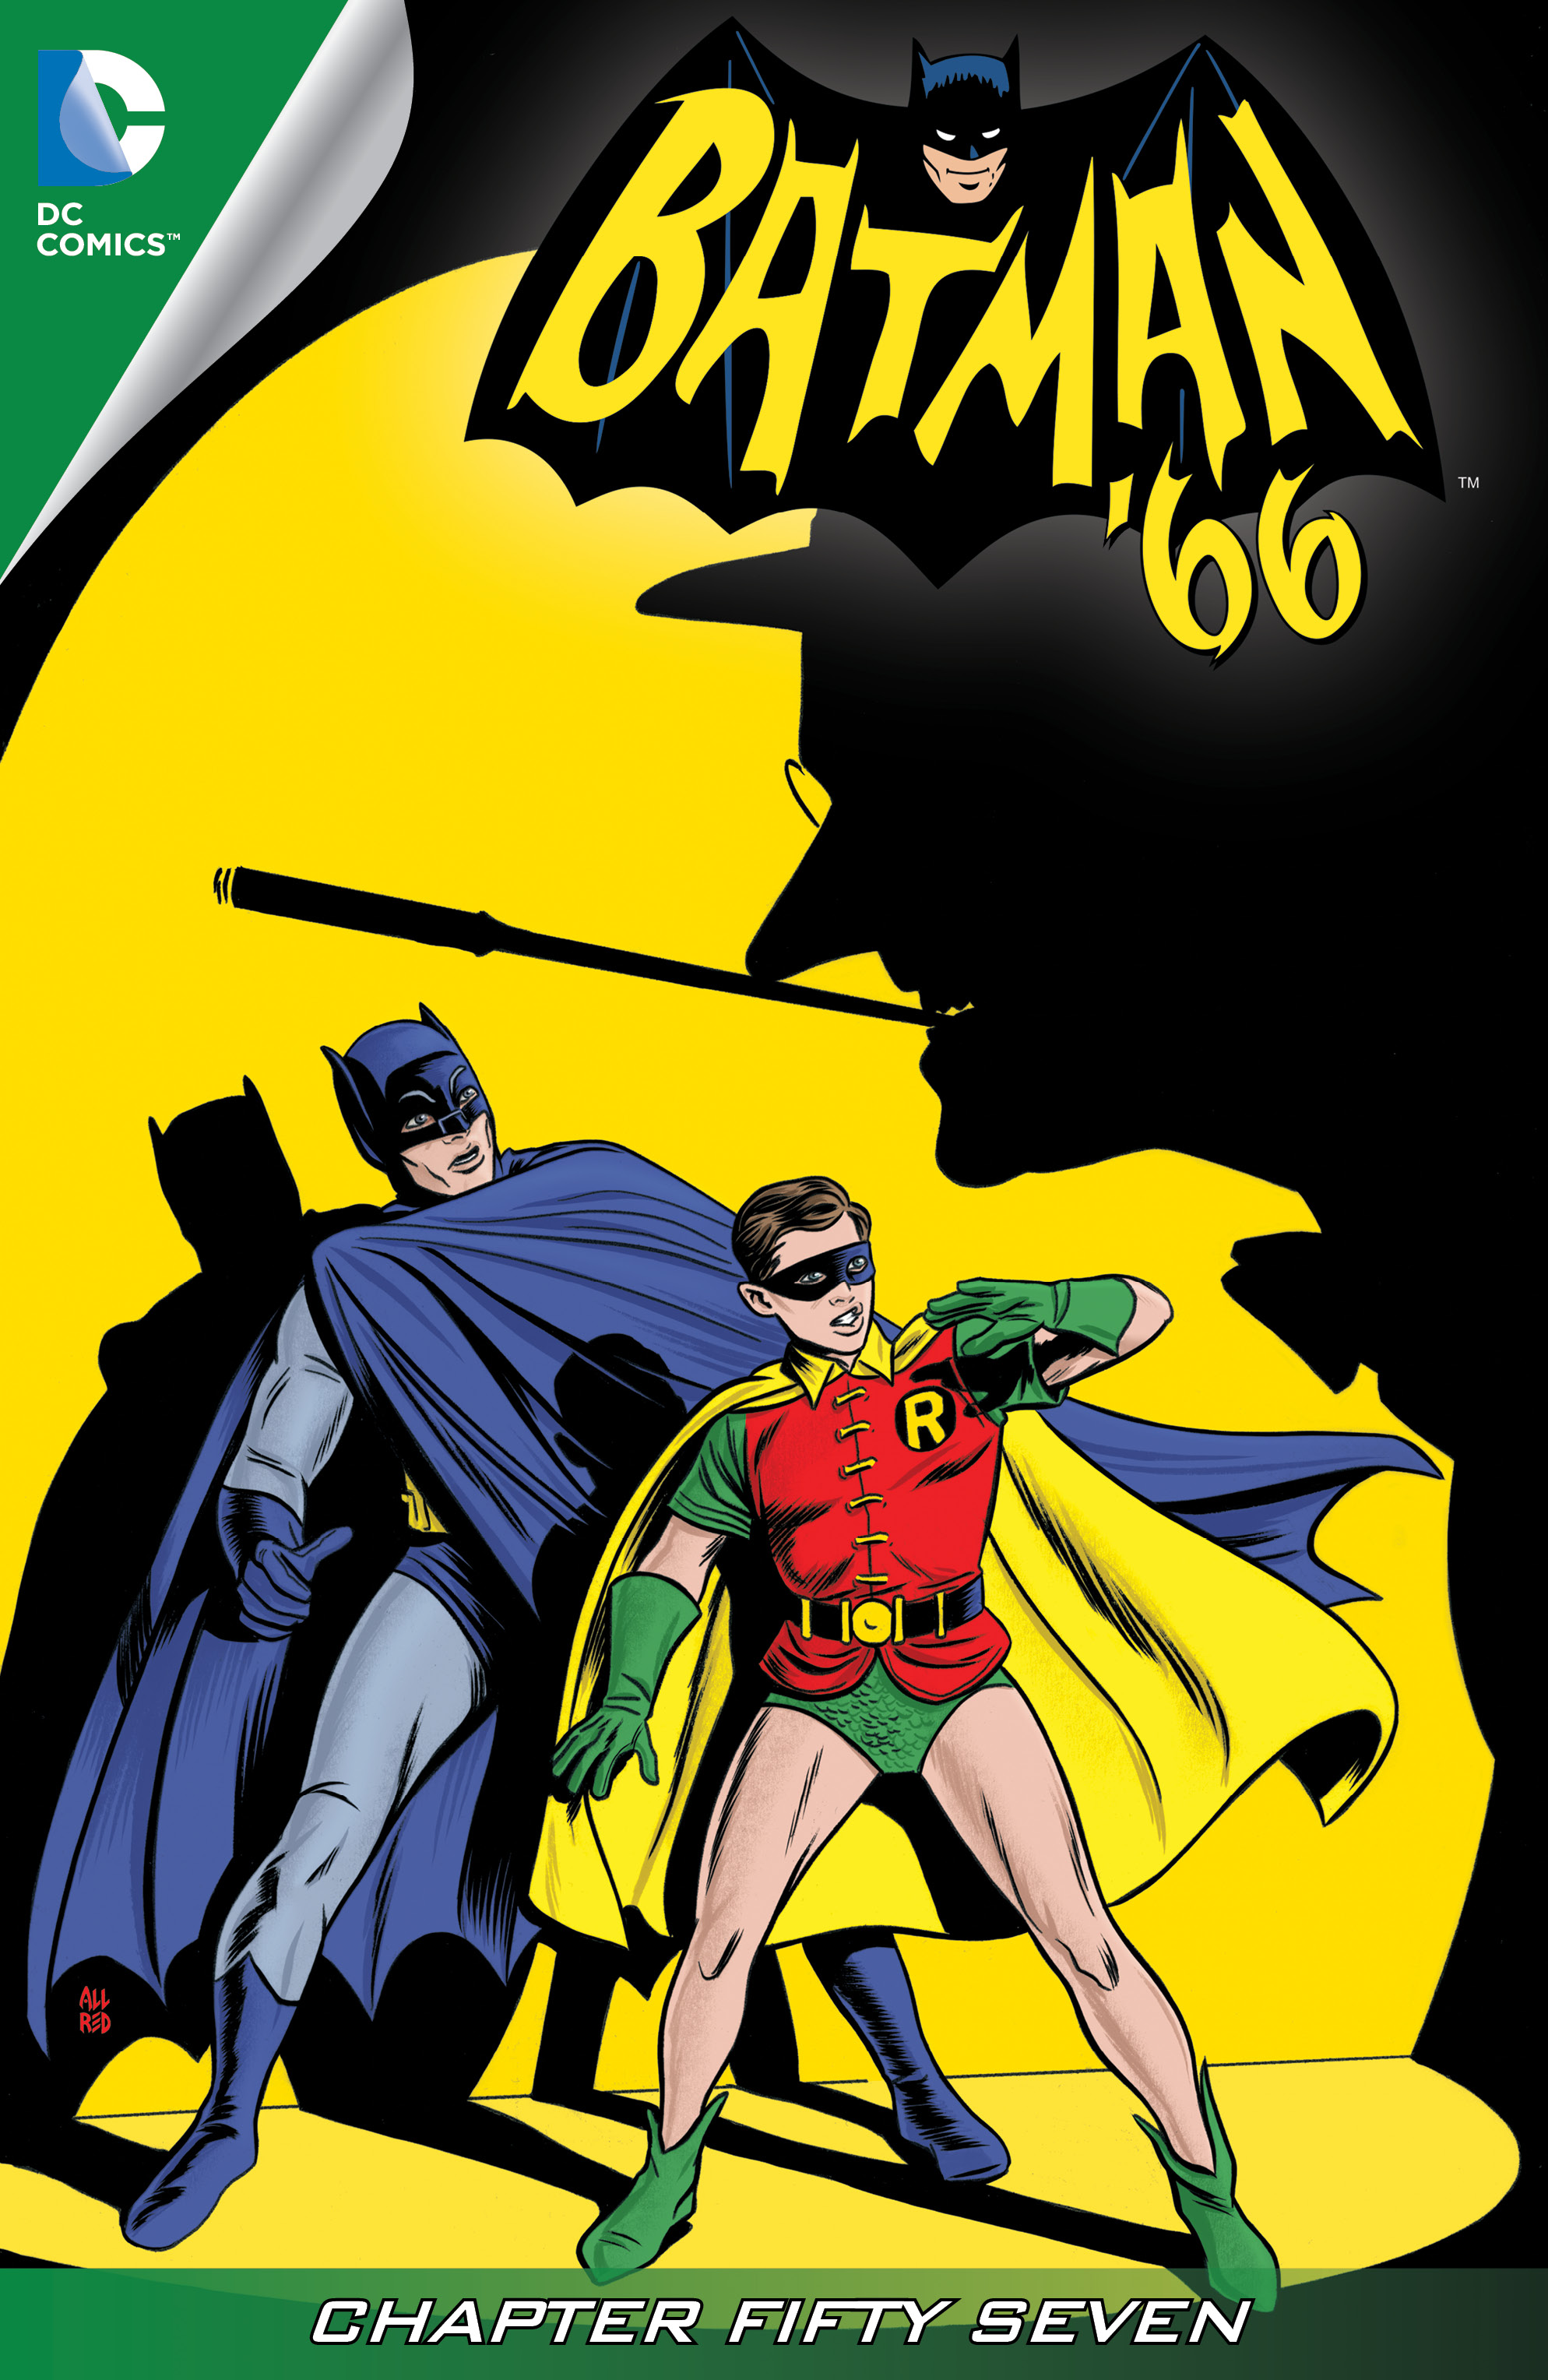 Batman '66 #57 preview images